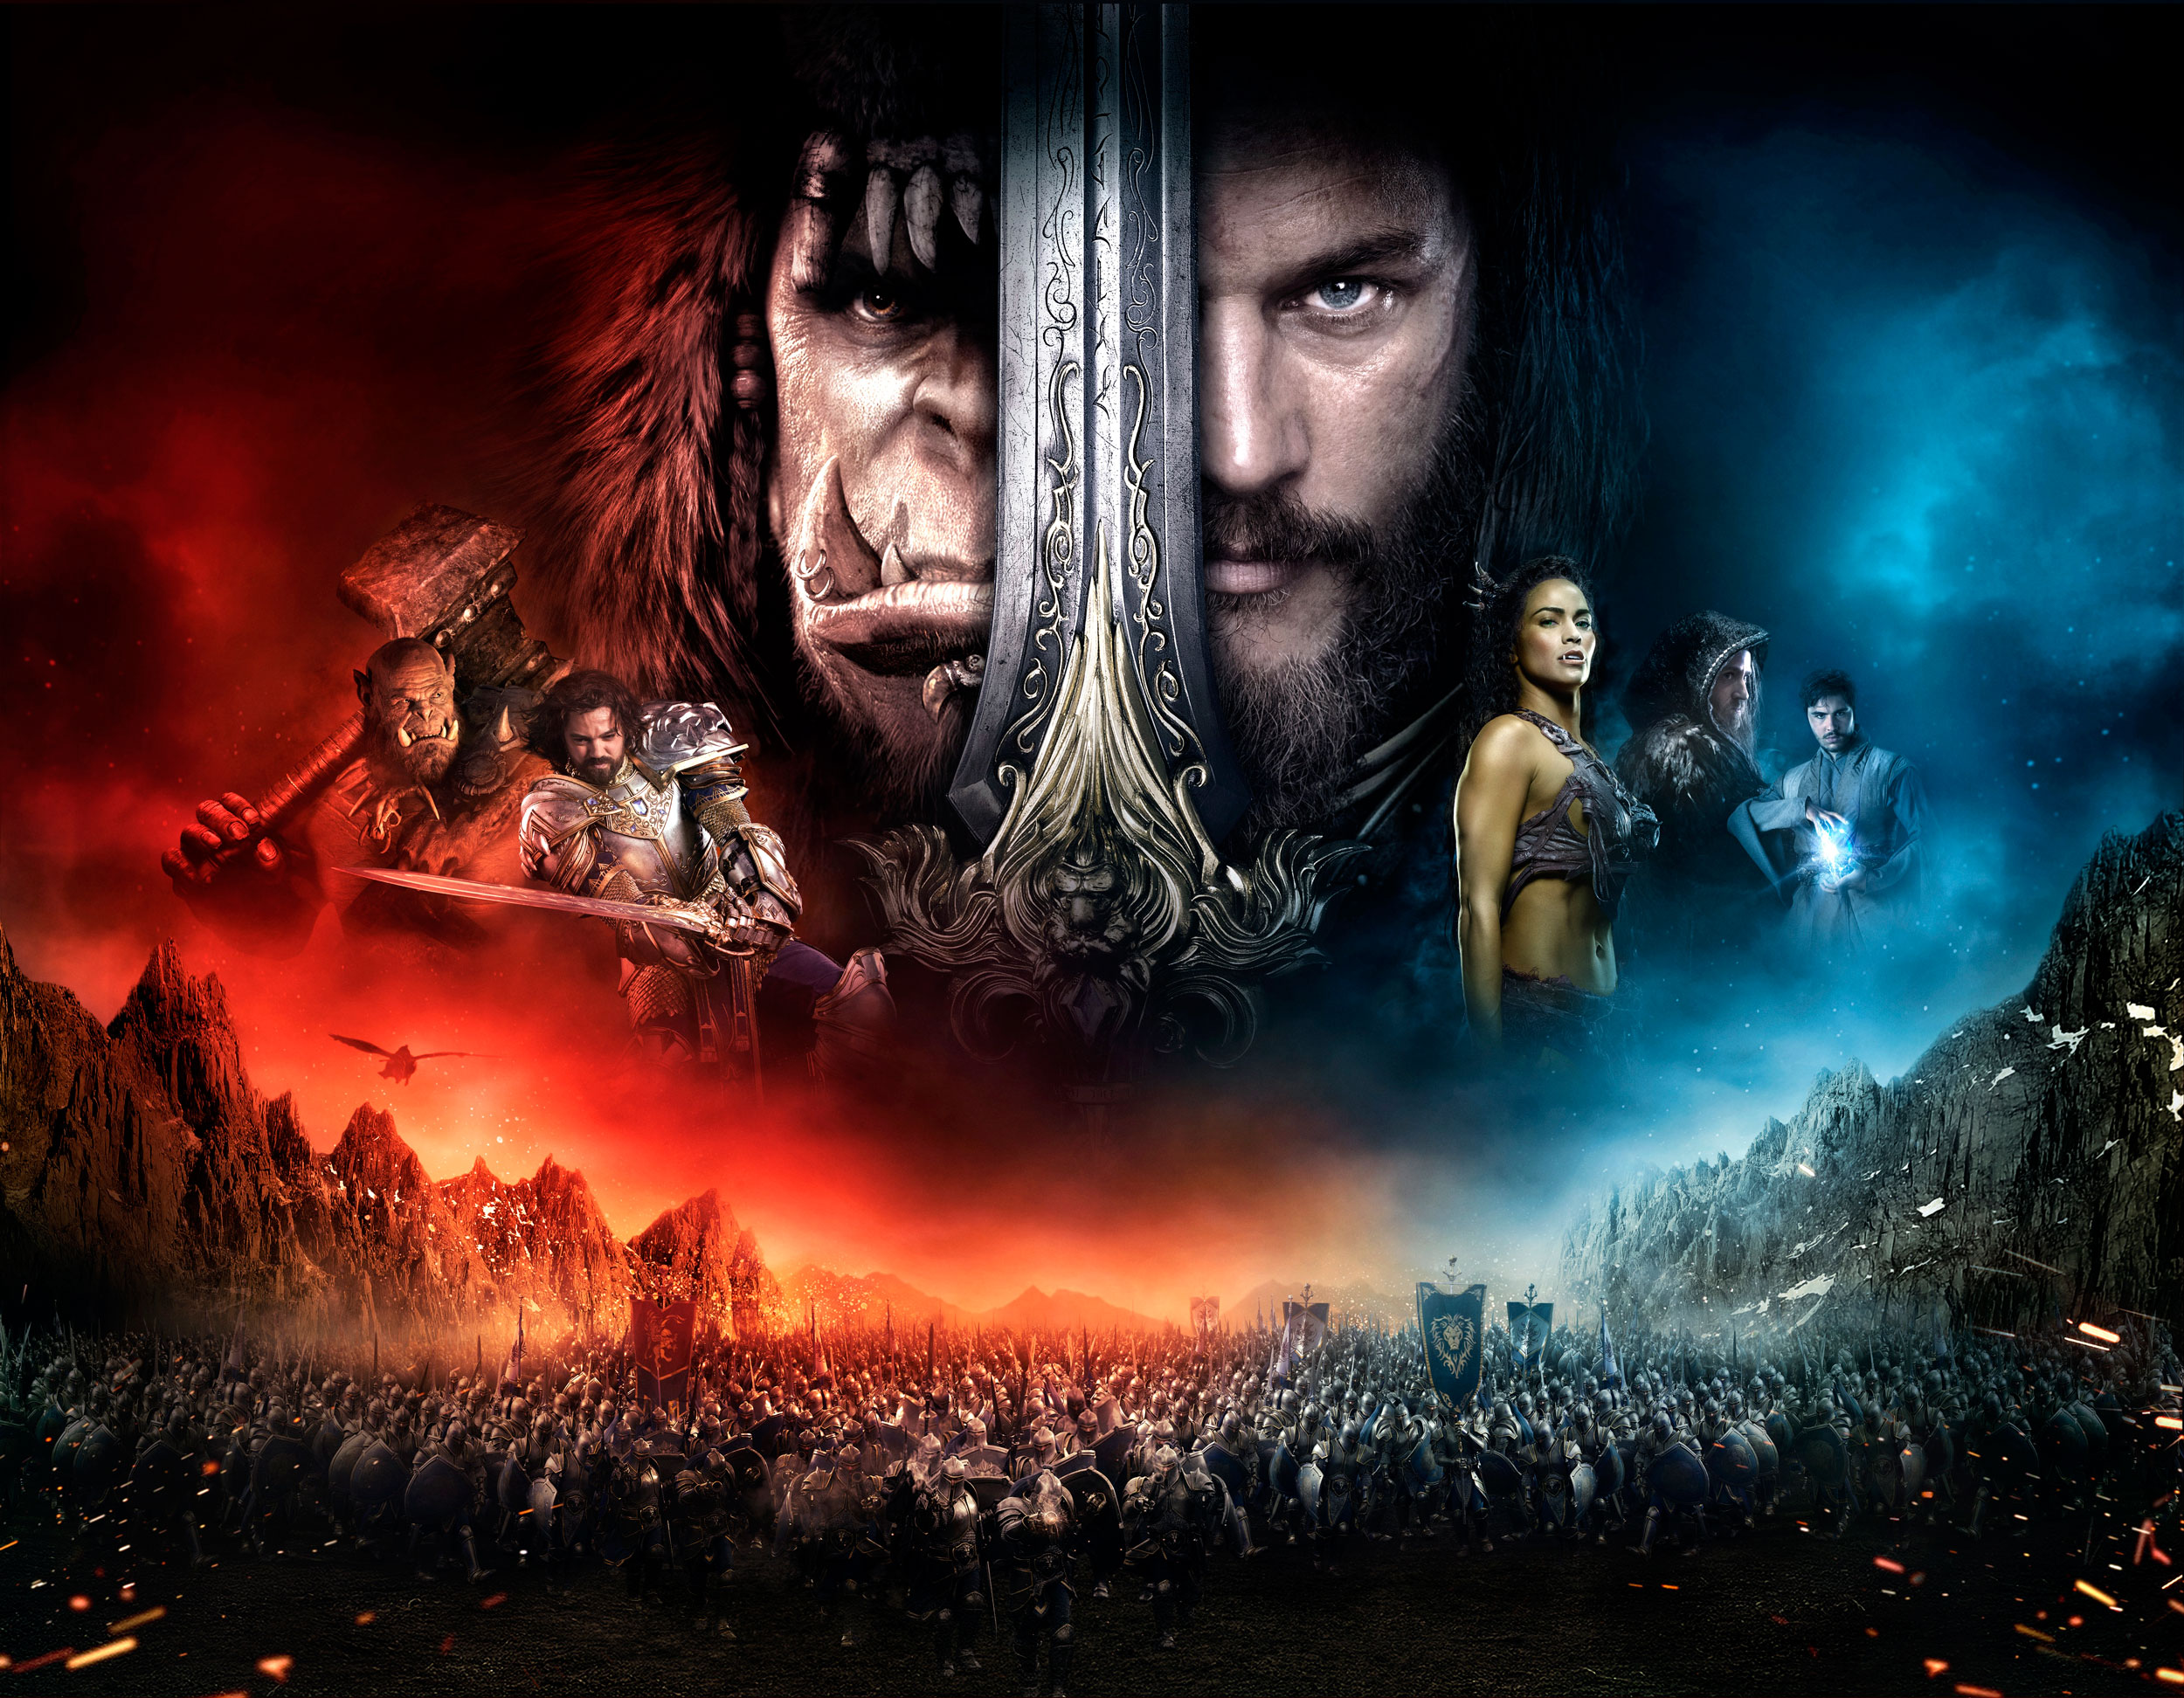 Warcraft Poster